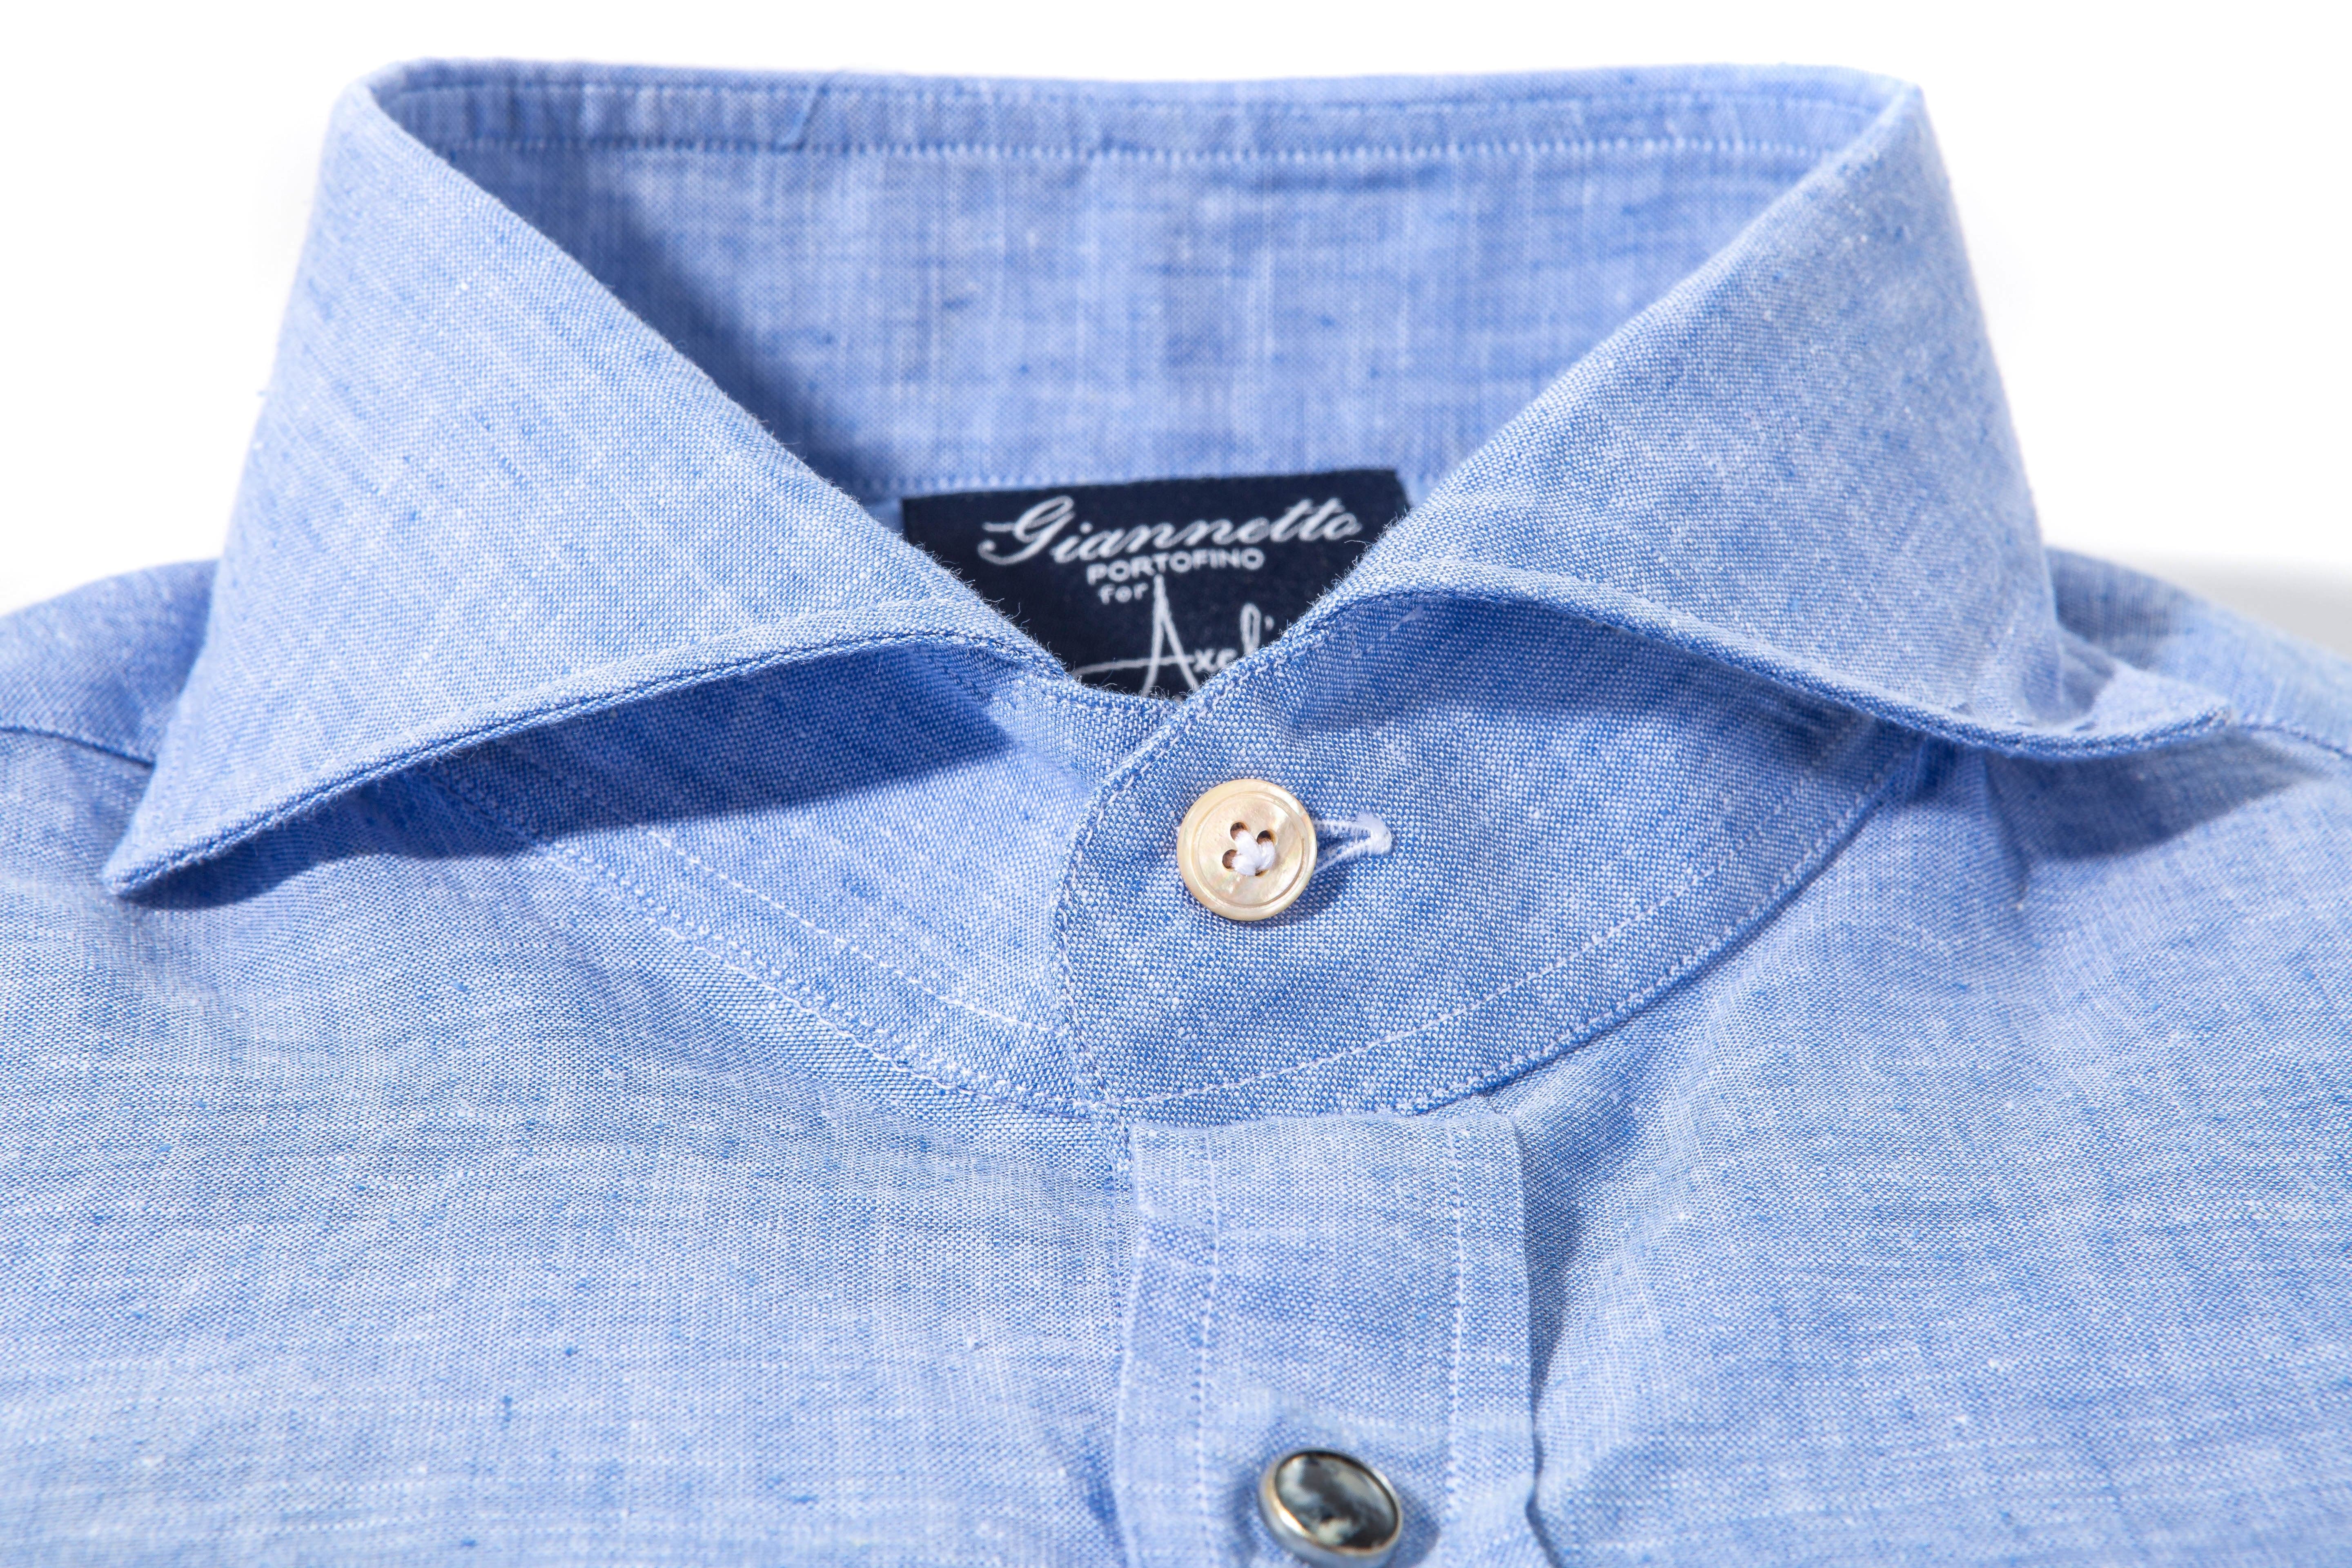 Mach Linen Cotton Shirt in Blue - AXEL'S